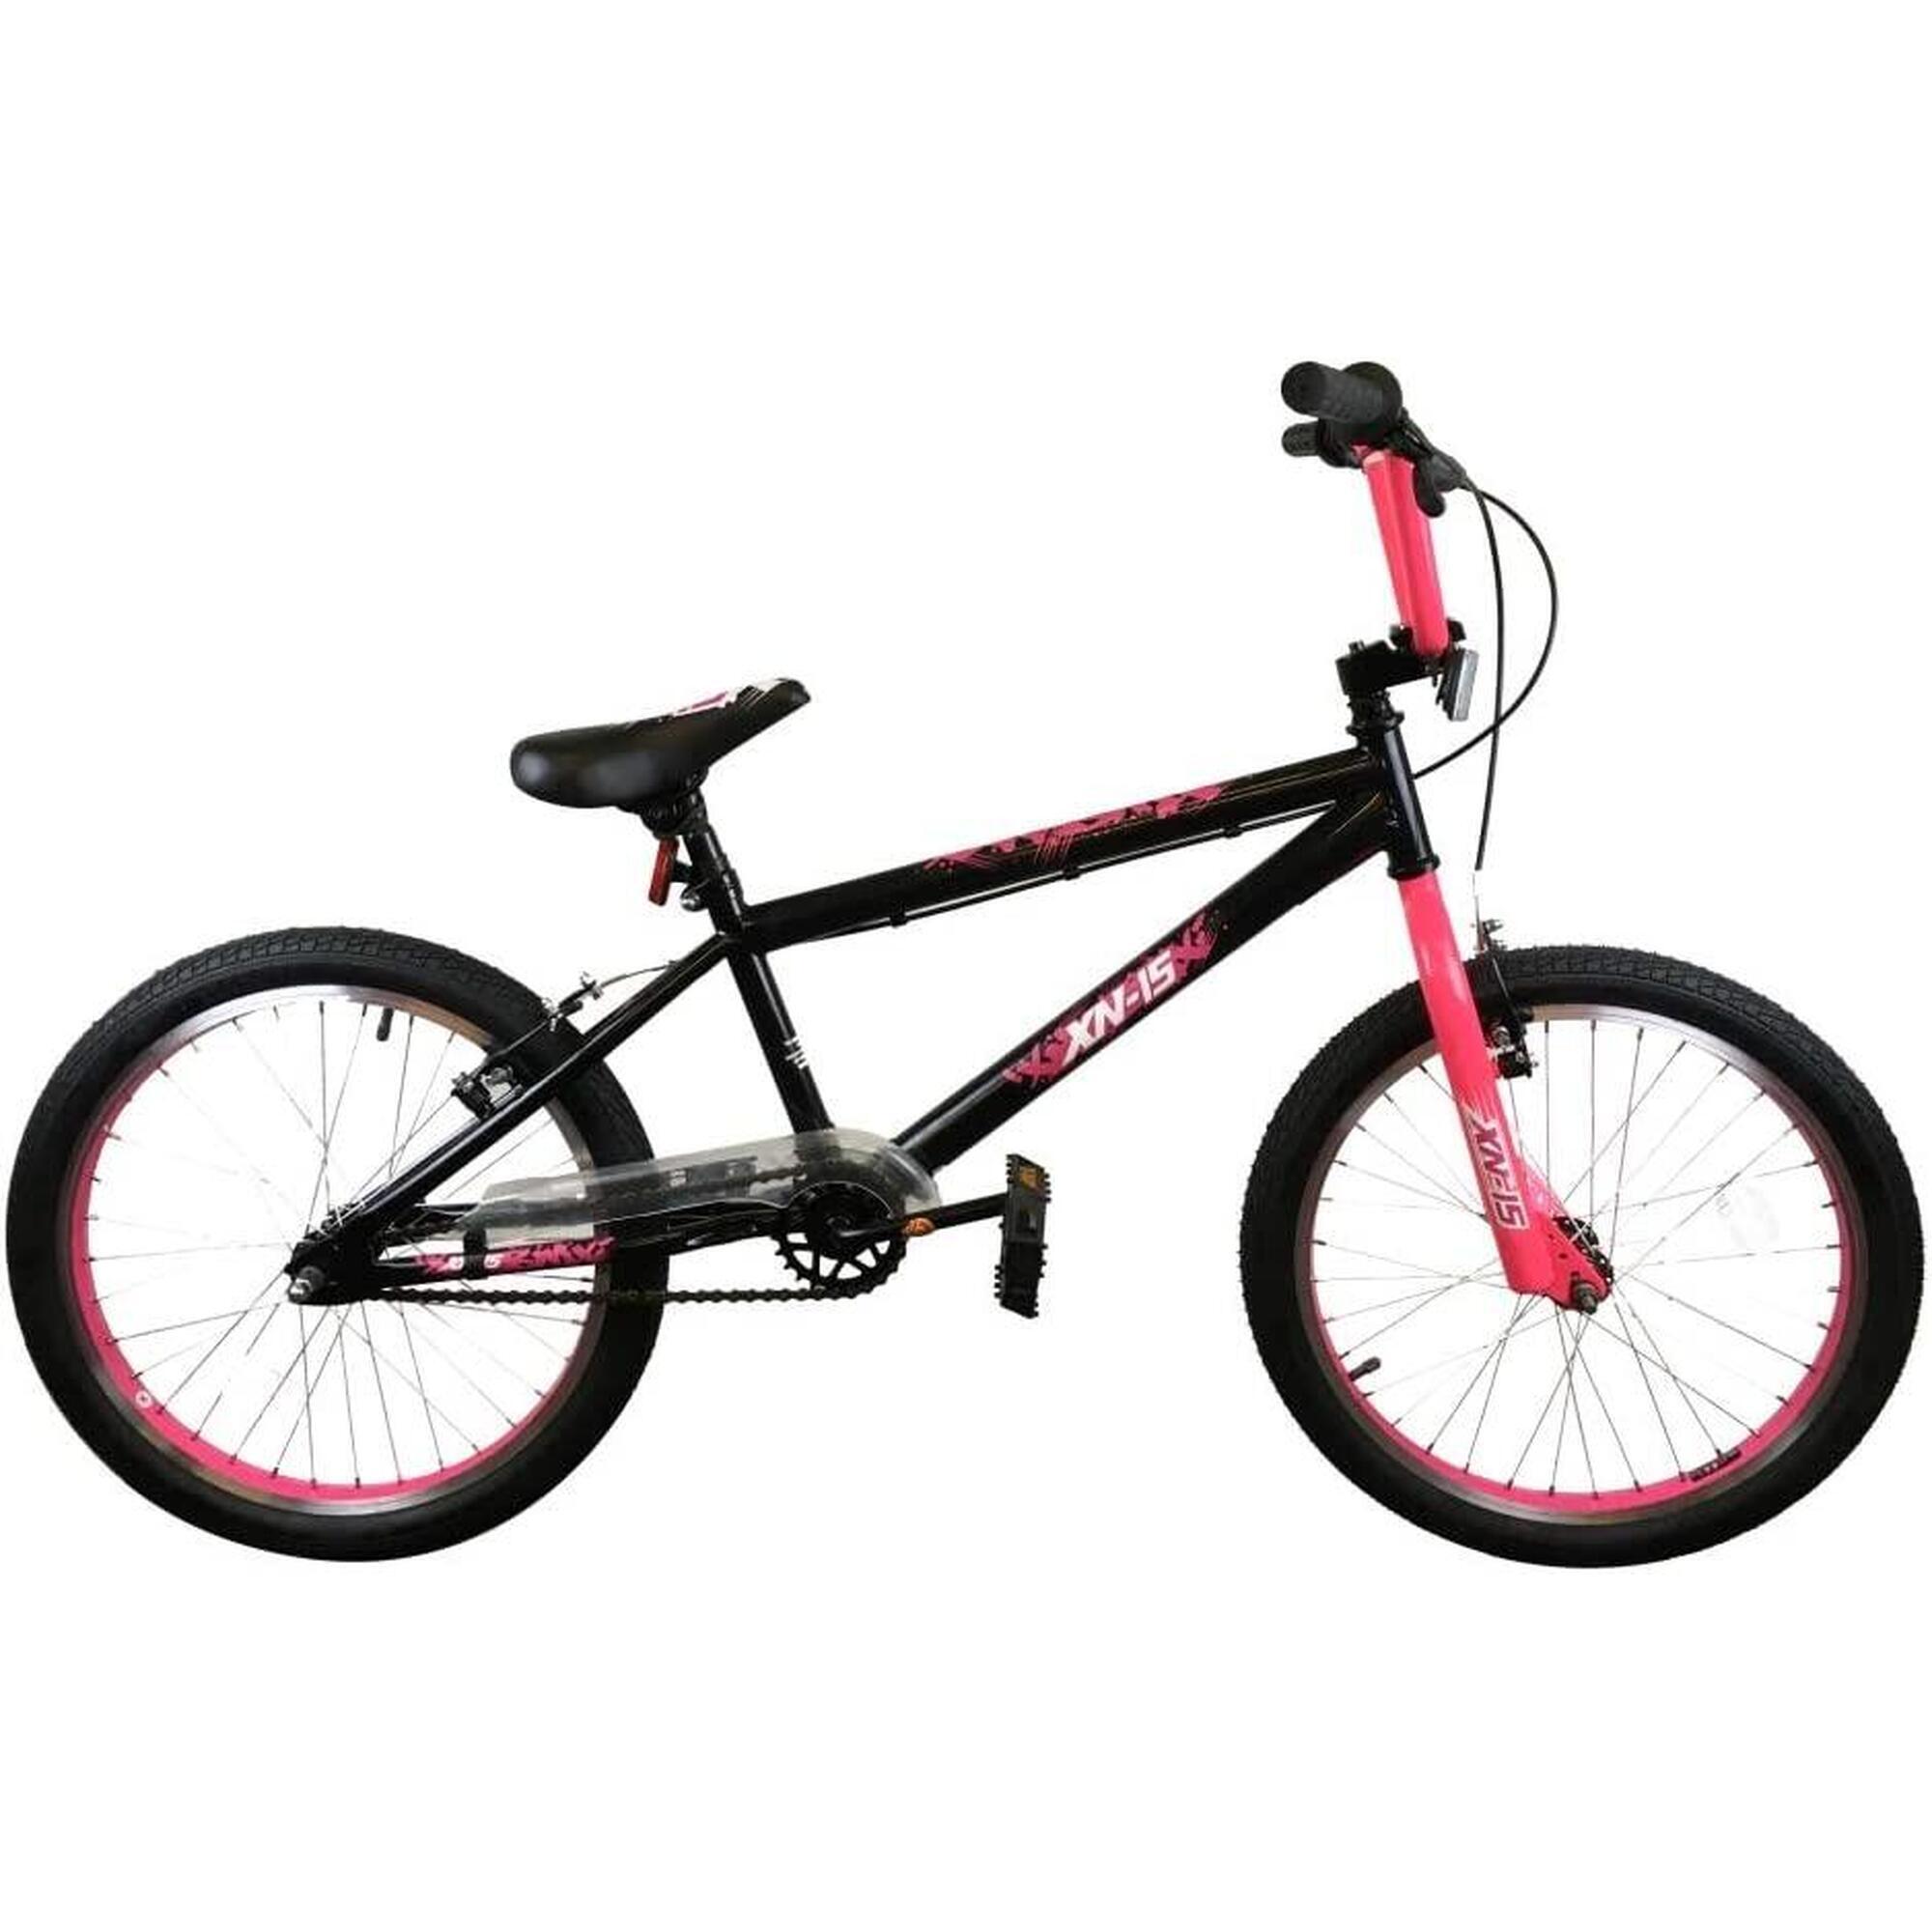 XN-15-20 Kids 20In BMX Bike - Black/Flu Pink 1/5